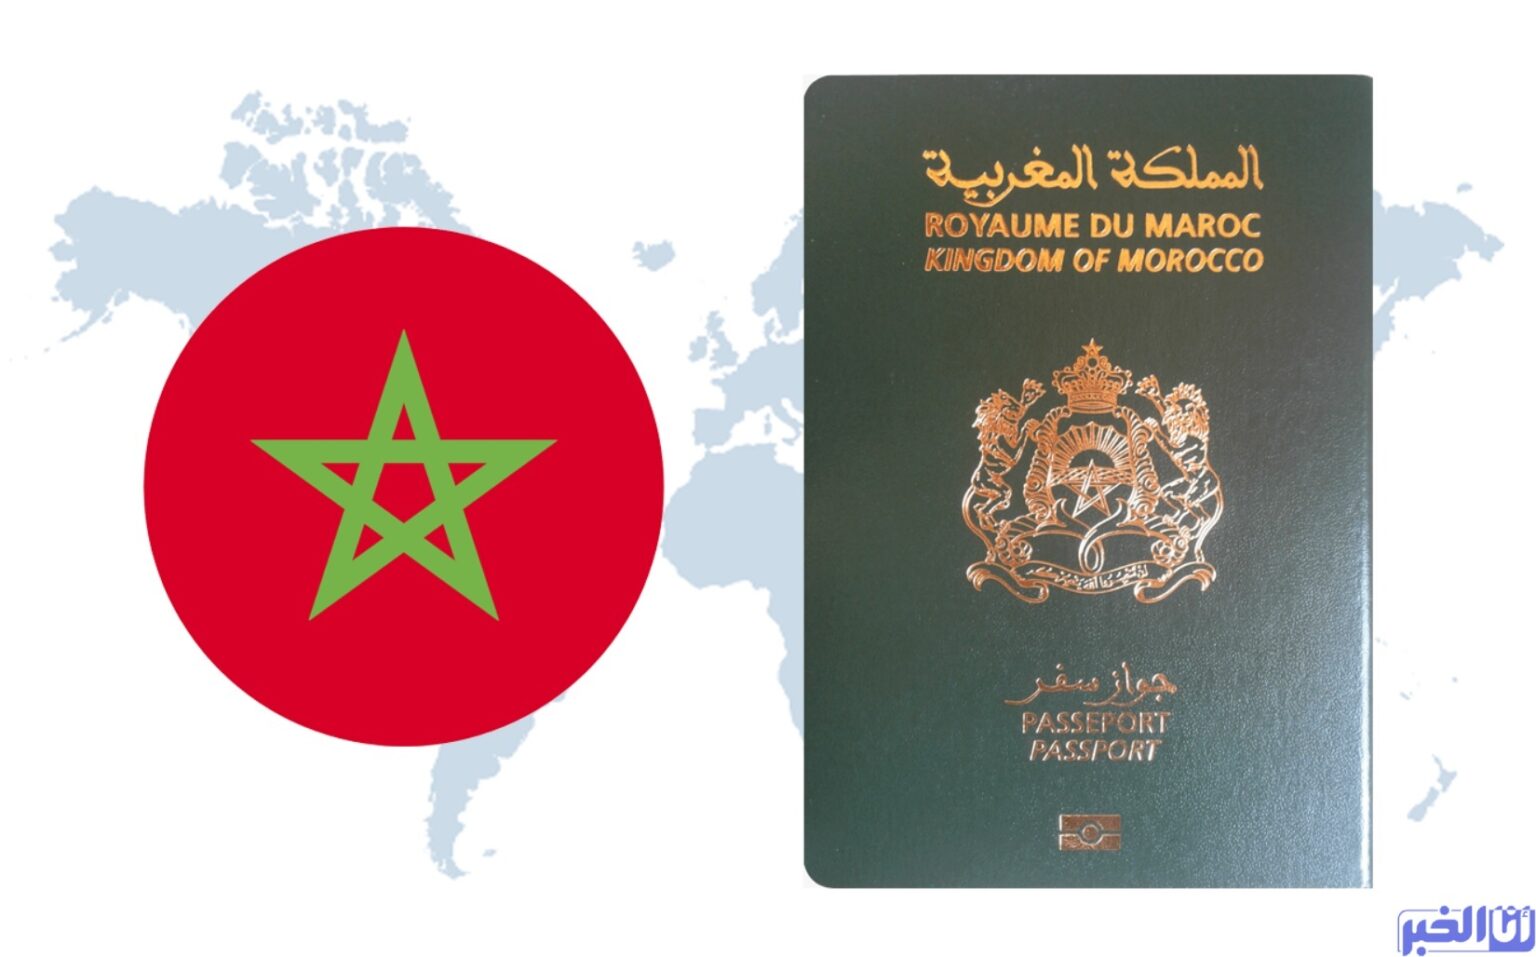 المغرب يقرر إلغاء التأشيرات مع هذه الدولة والأخرى ترد بالمثل